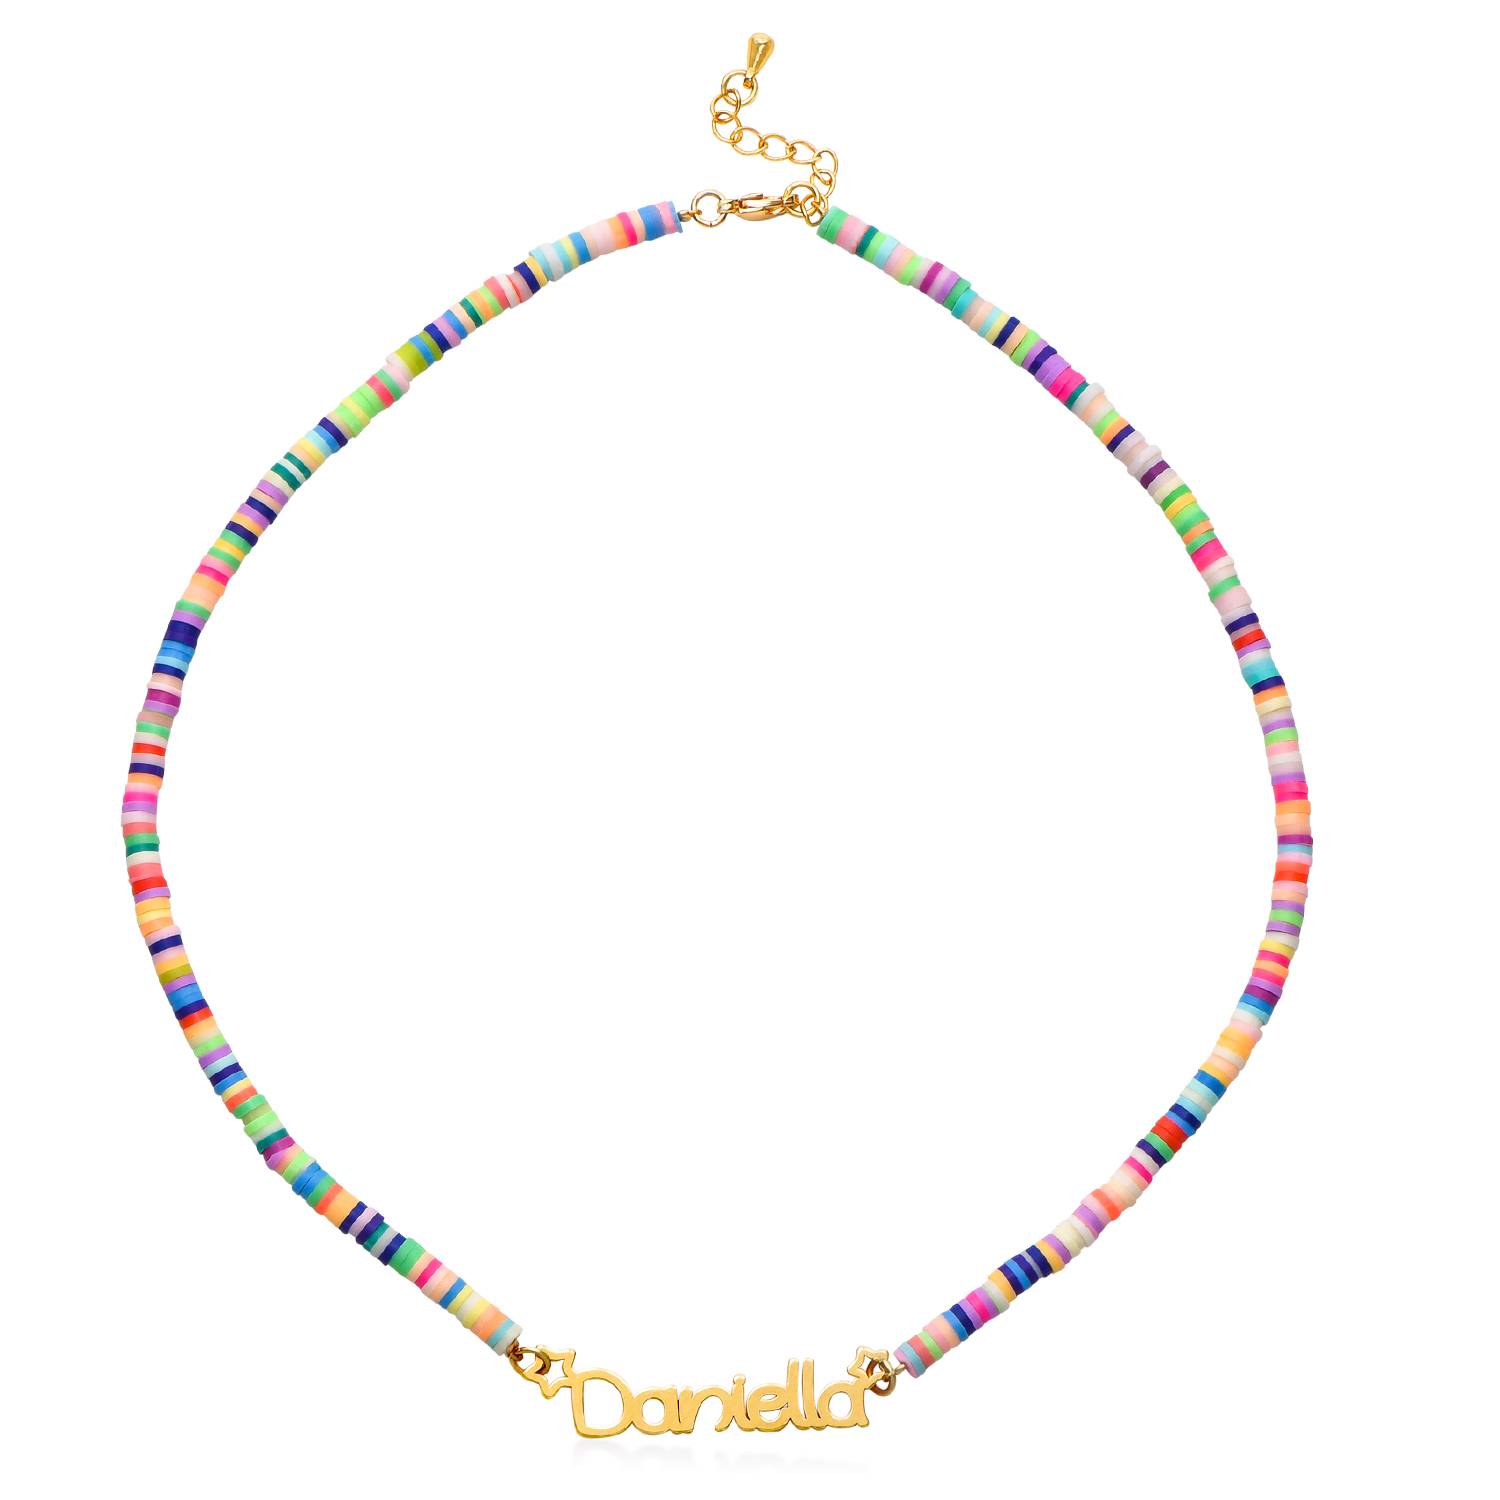 Regnbue halskæde til piger med navn - forgyldt-2 produkt billede